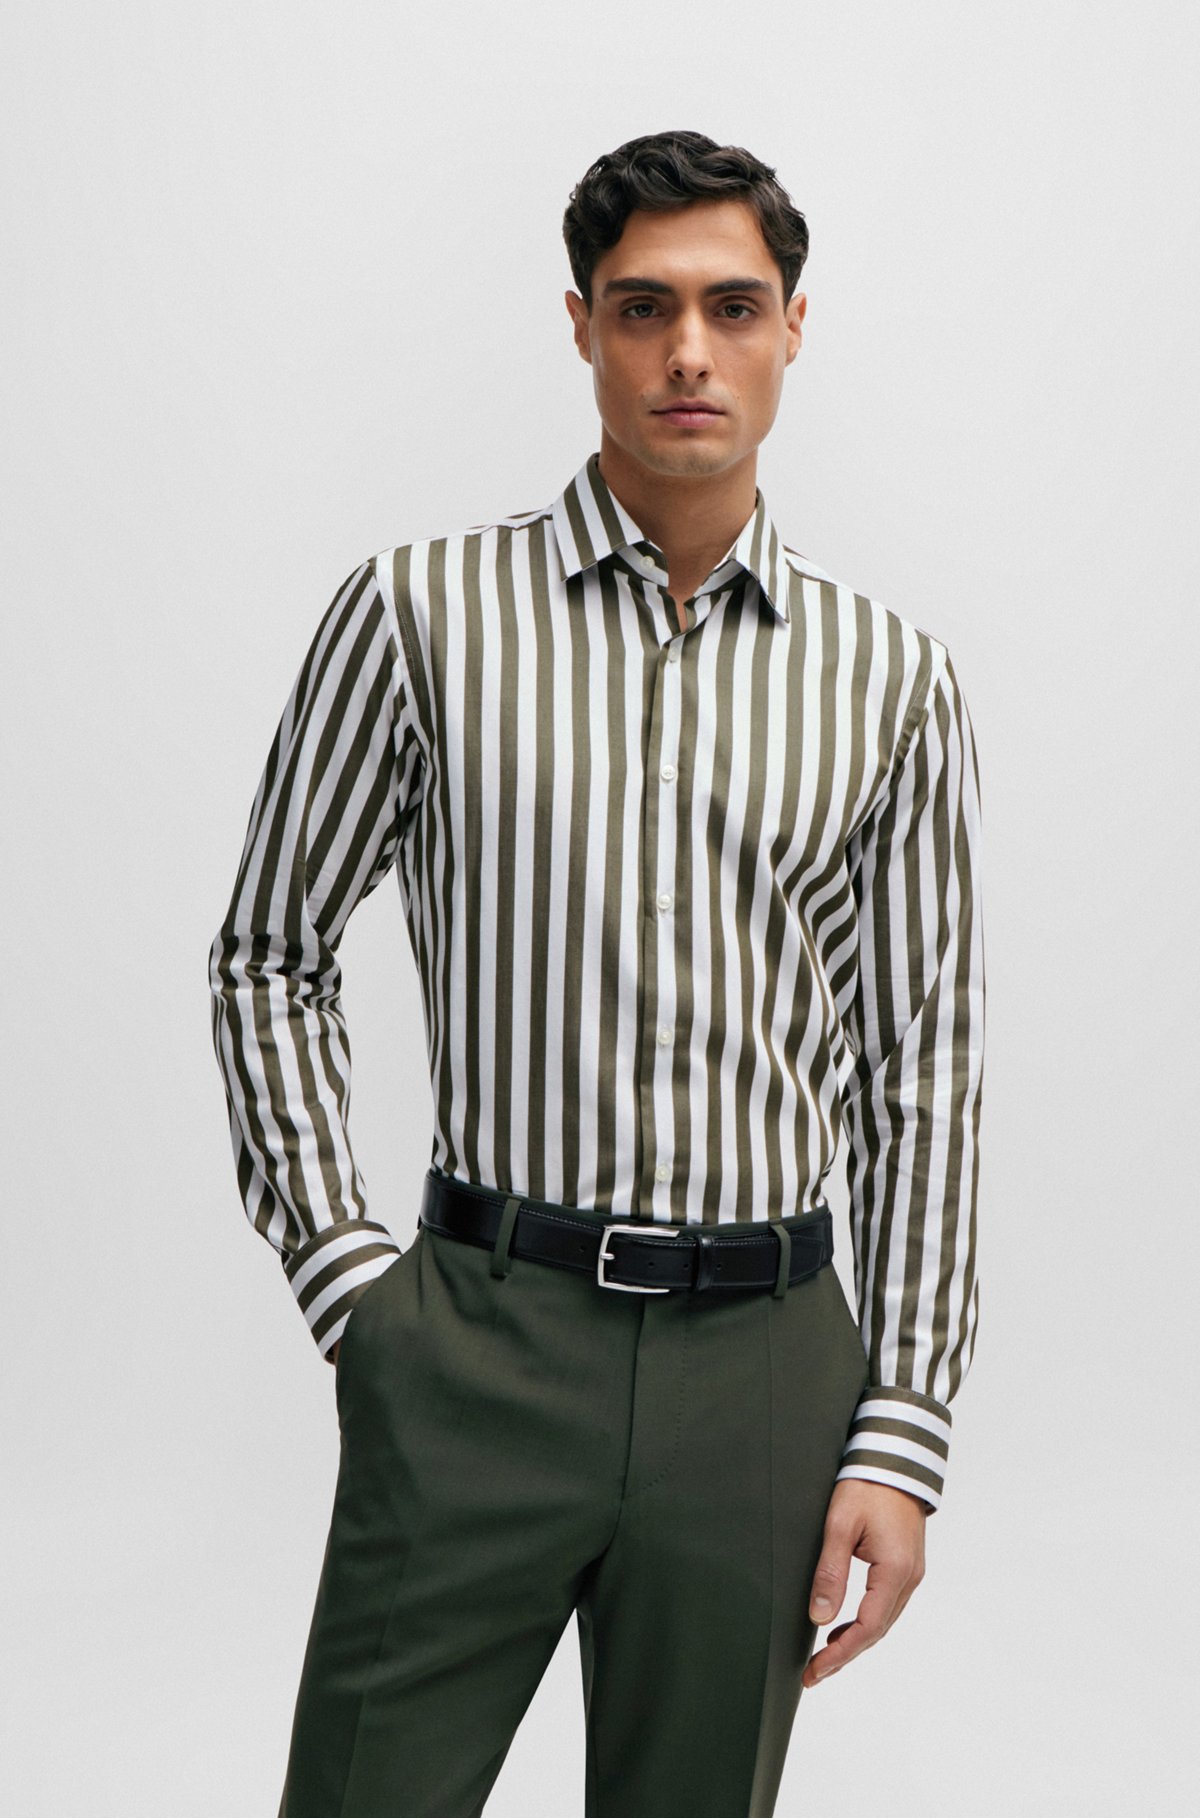 Regular-fit shirt in a striped cotton blend, Dark Green